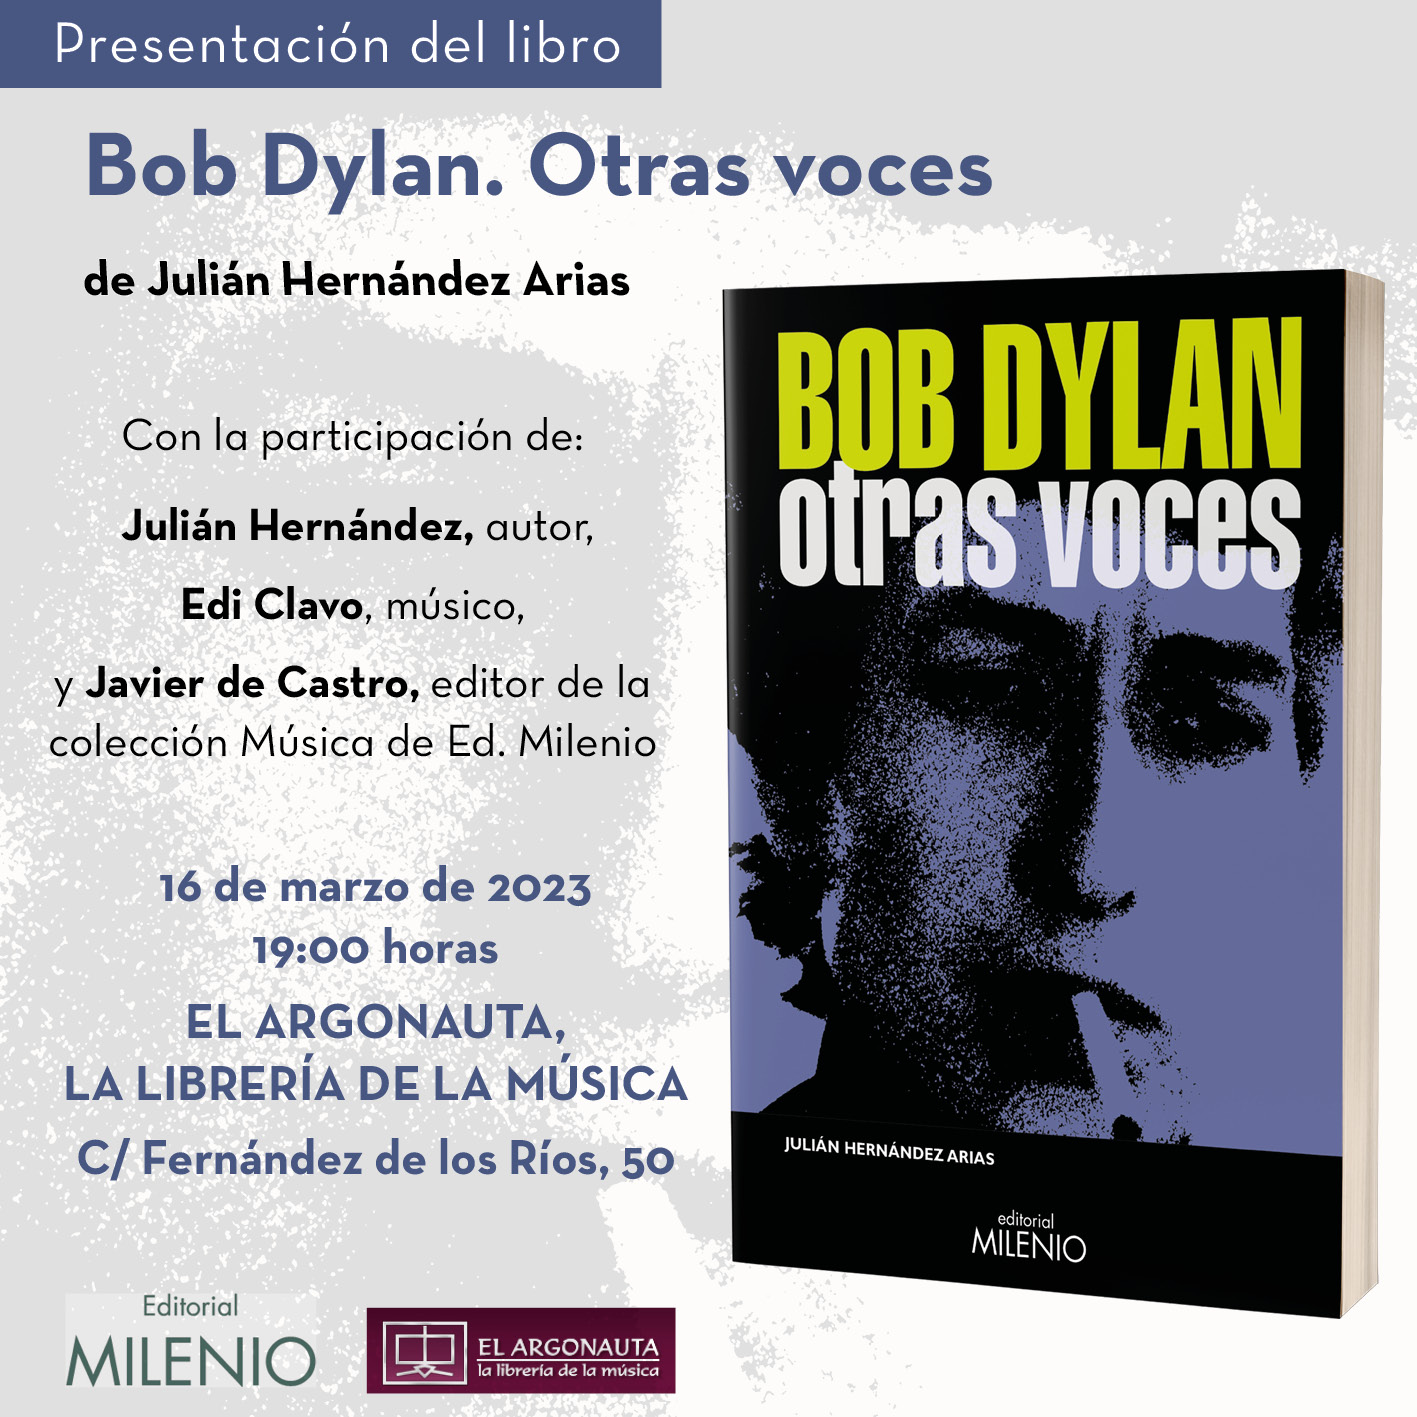 Presentación del libro 'Bob Dylan. Otras voces', de Julián Hernández Arias